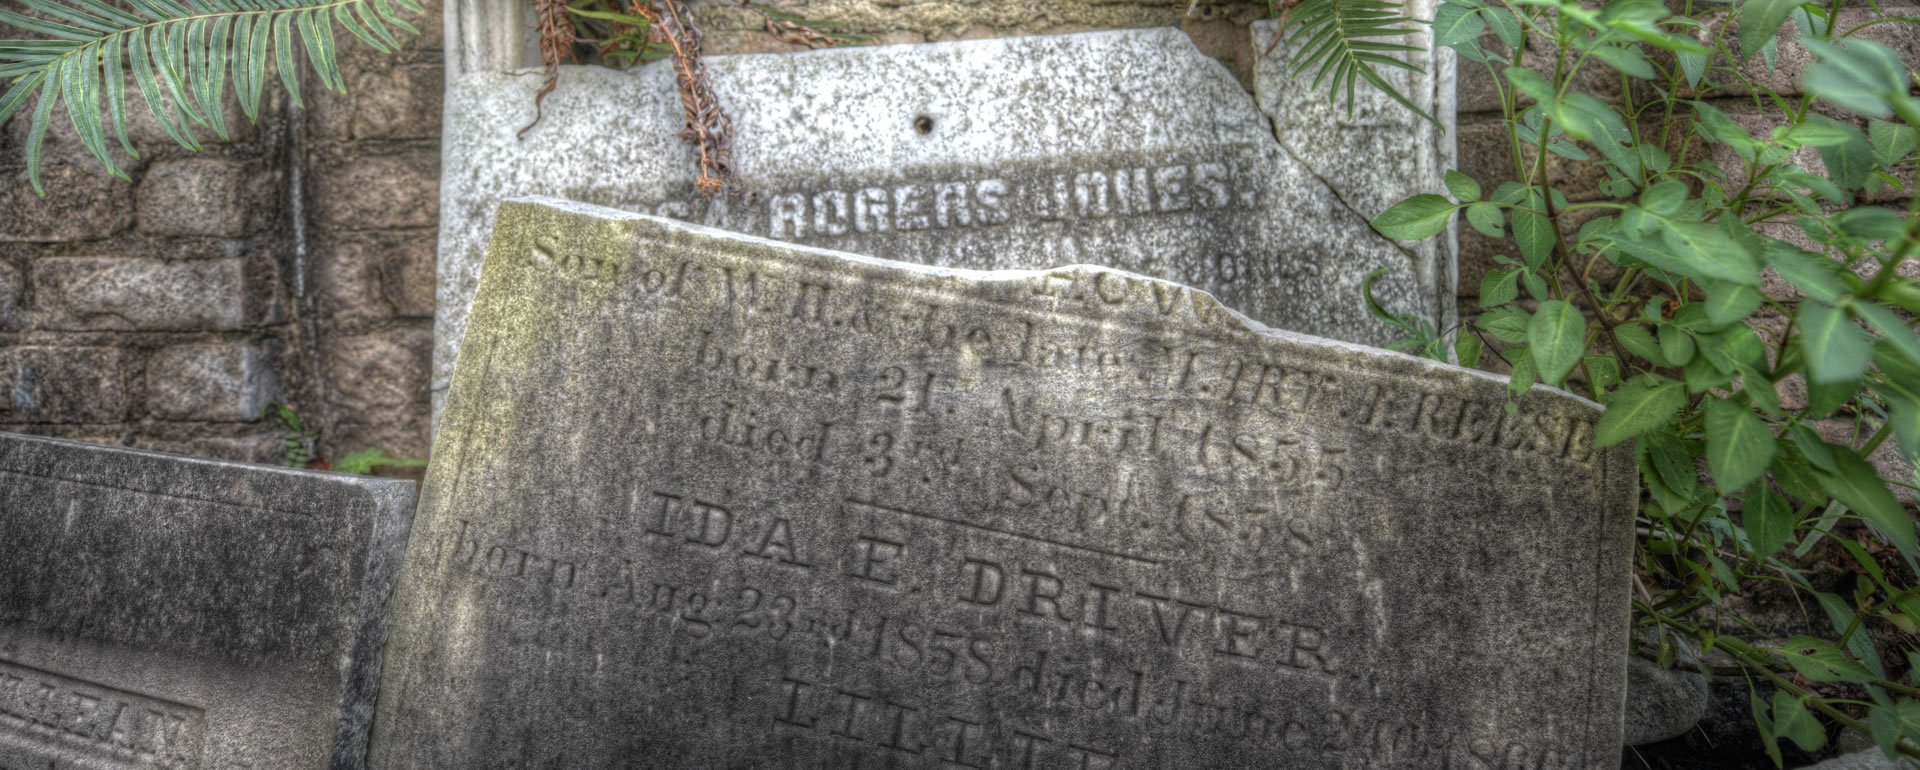 El muro del cementerio Lafayette, uno de los cementerios del Garden District. Se dice que está perseguido por fantasmas.